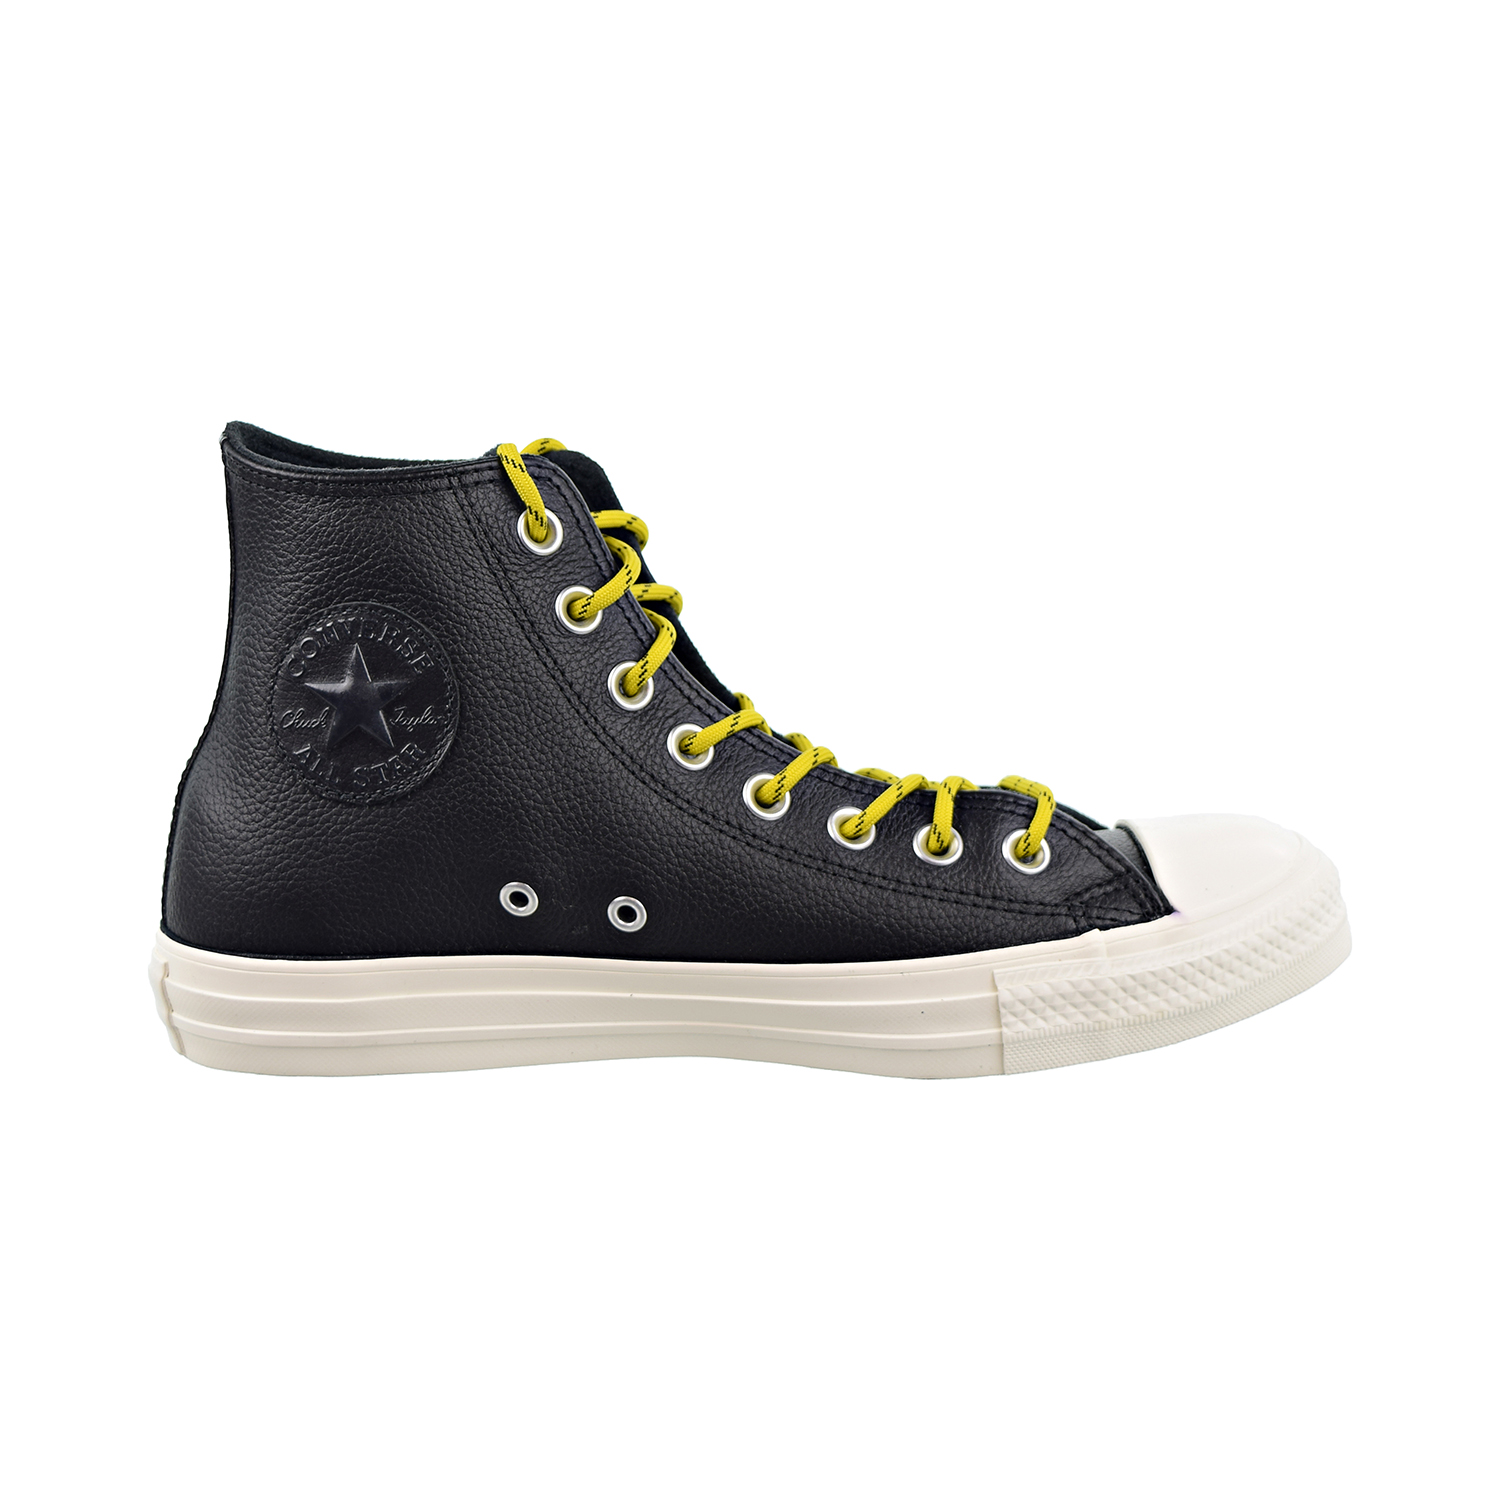 Converse Chuck Taylor All Star HI Mens Shoes Black-Bold Citron-Egret 163339c - image 1 of 6